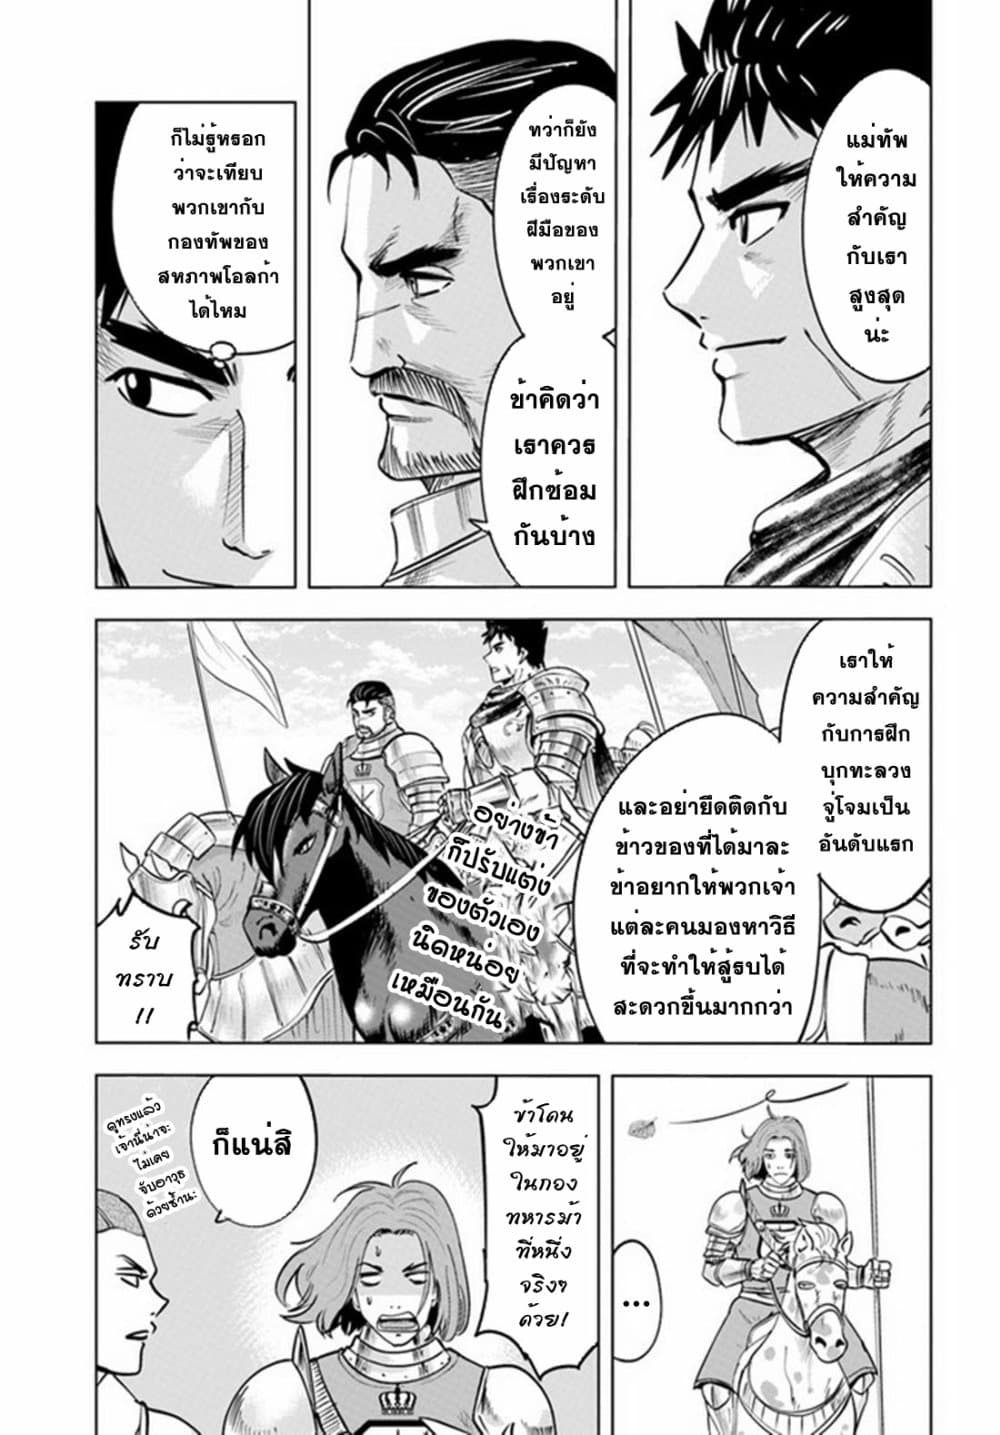 Oukoku e Tsuzuku Michi dorei Kenshi no Nariagari Eiyutan (Haaremu Raifu) - Road to the Kingdom Slave Swordsman the Rise of Heroes - Harem Life 33-33